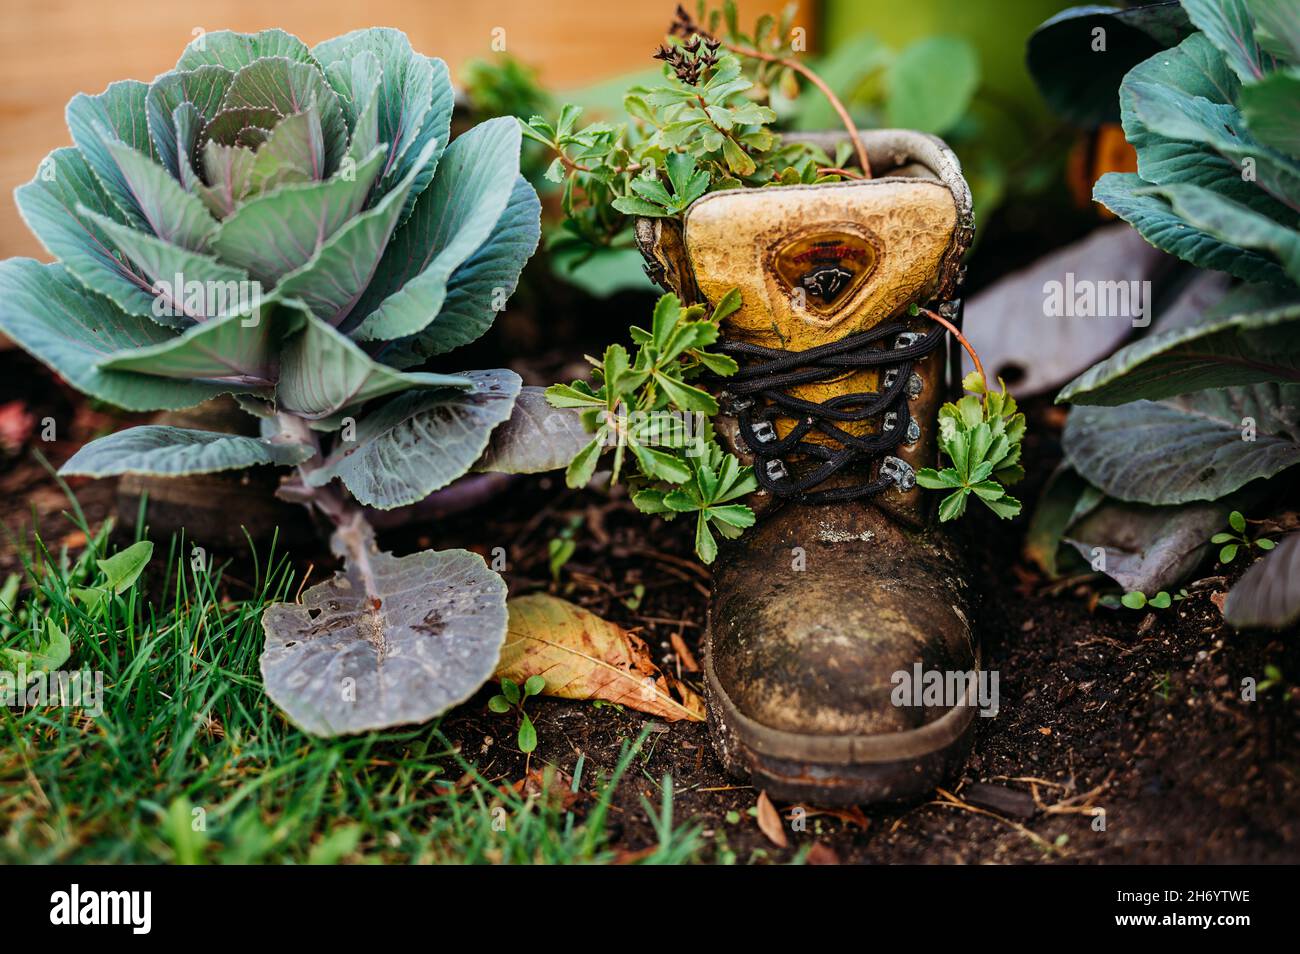 Primer plano de una vieja bota desgastada como una maceta de flores con plantas verdes creciendo en ella Foto de stock